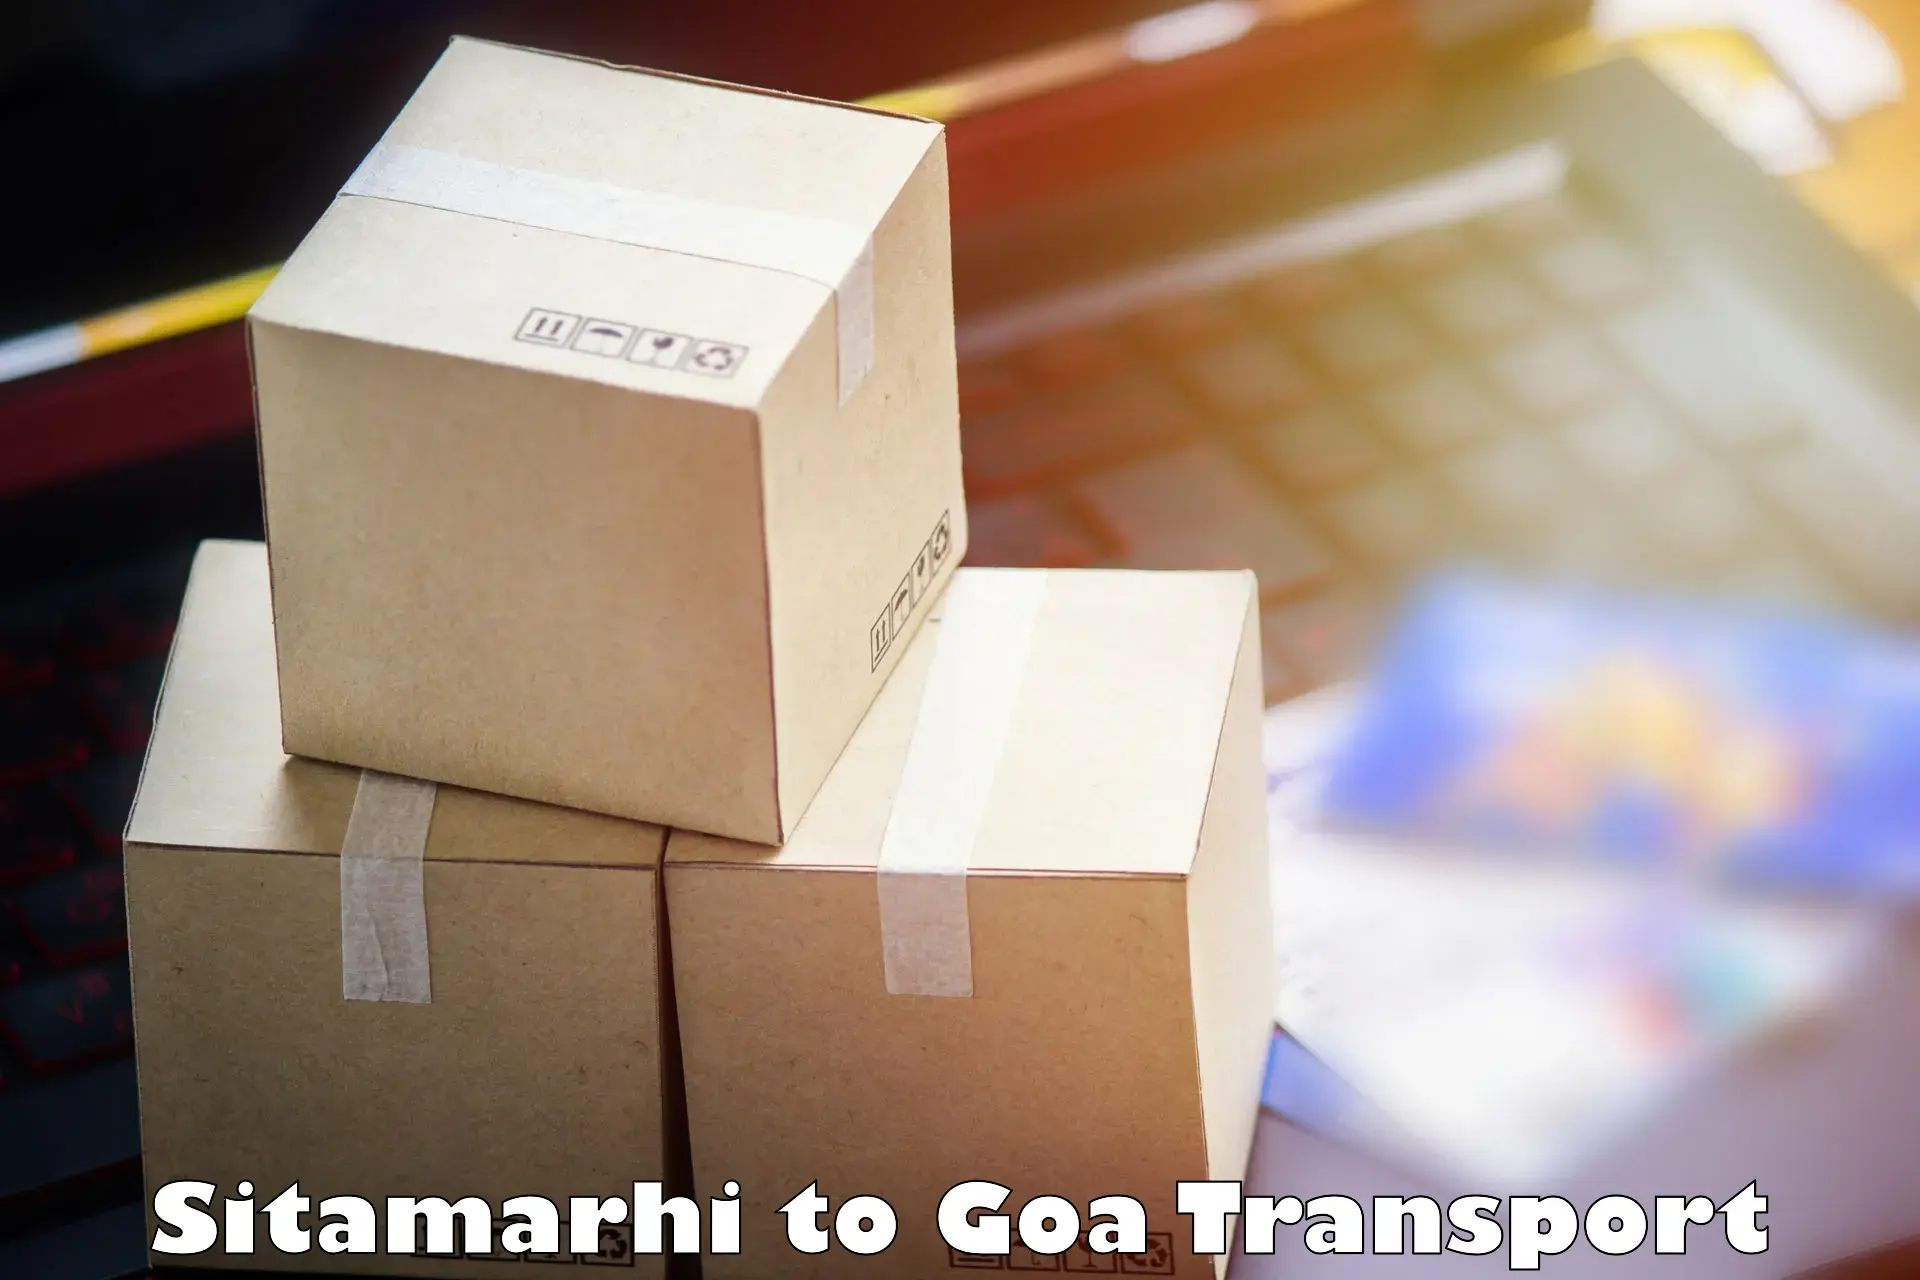 Two wheeler parcel service Sitamarhi to Panjim